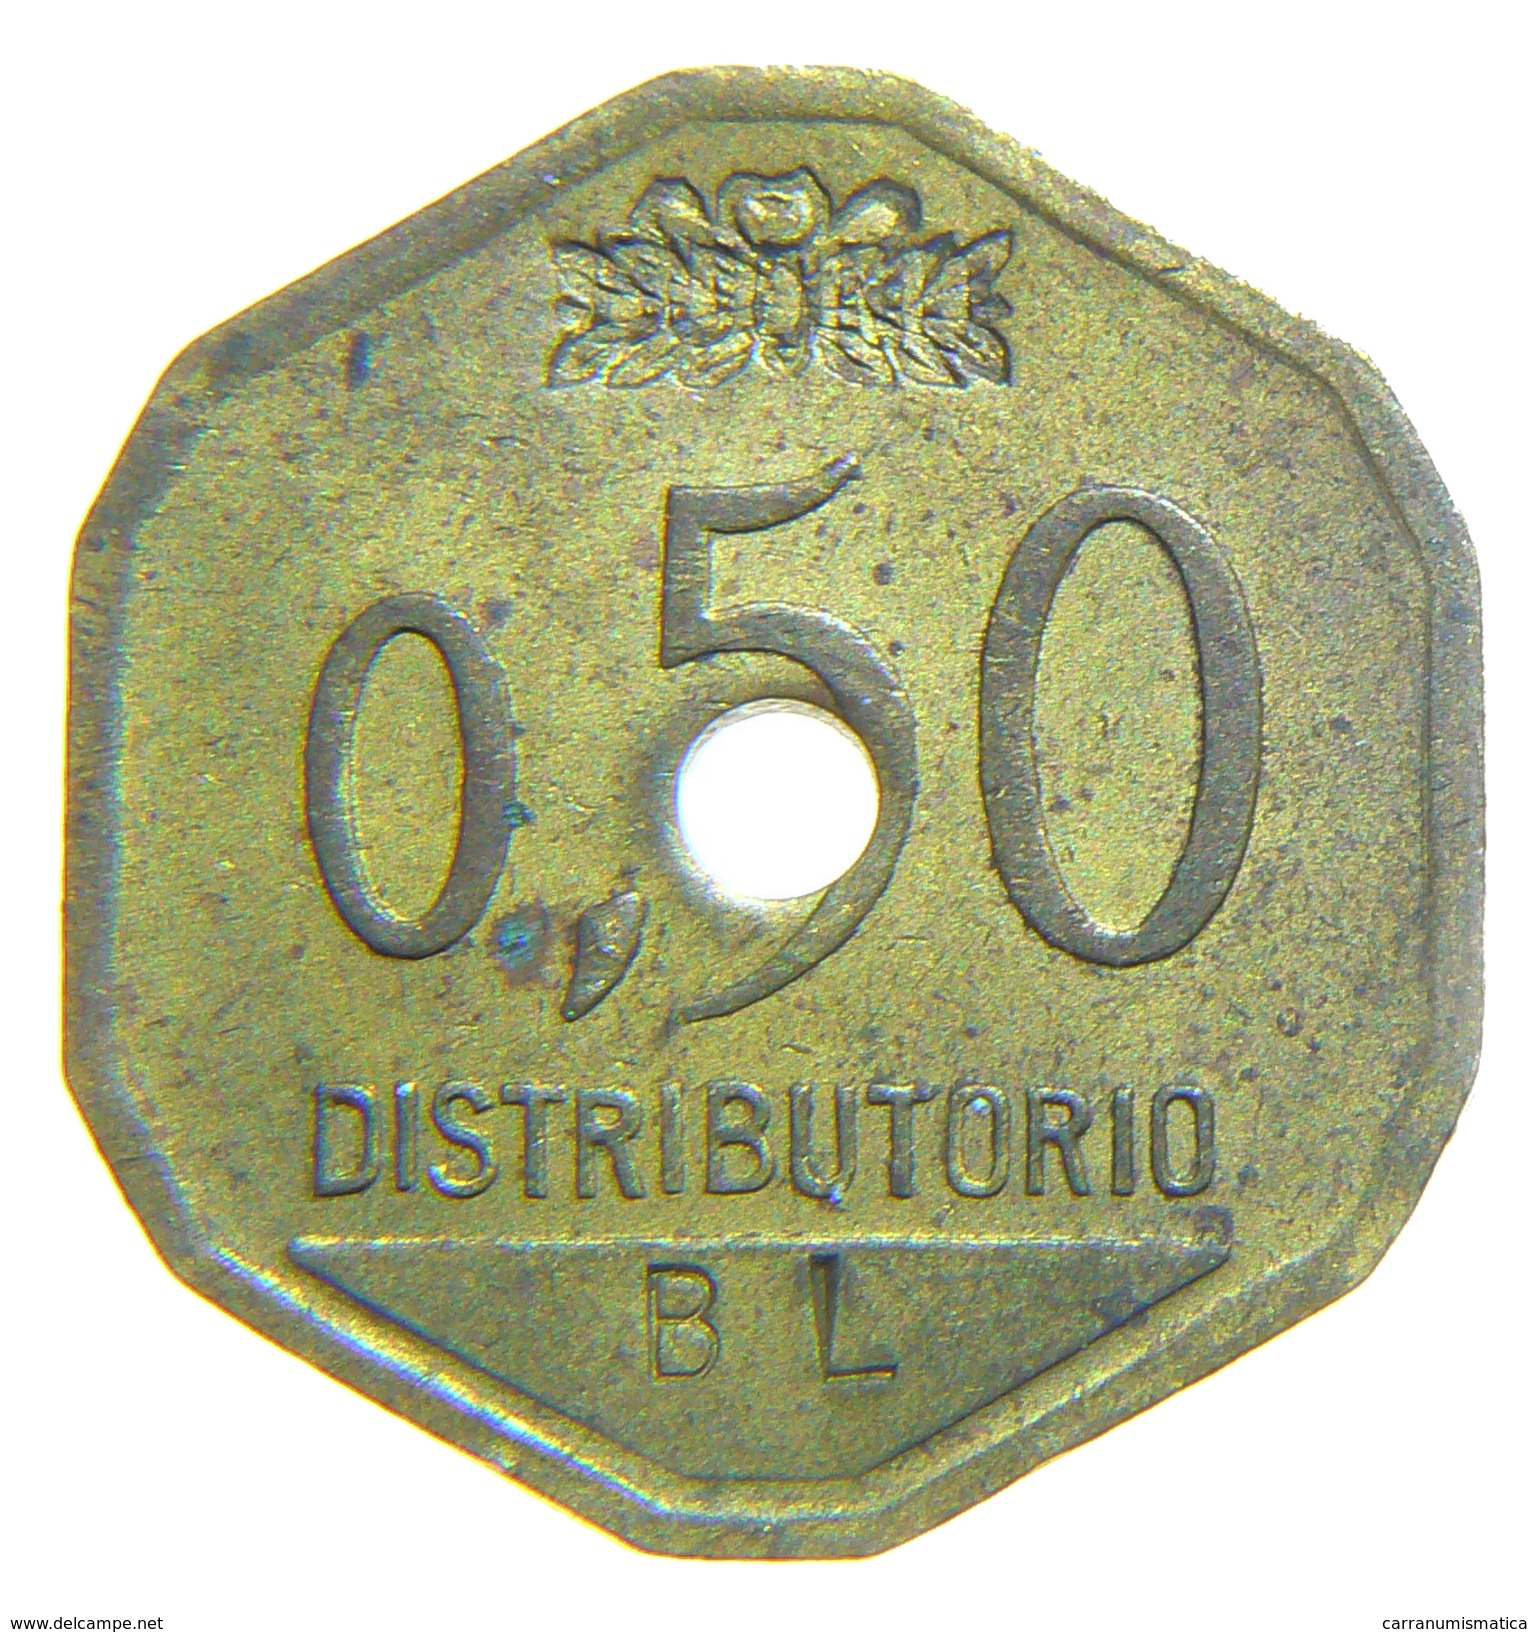 [NC] ITALIA - GETTONI MONETALI 1938 - SOCIETA ANONIMA NAZIONALE COGNE - 0,5 LIRE - Monetari/ Di Necessità